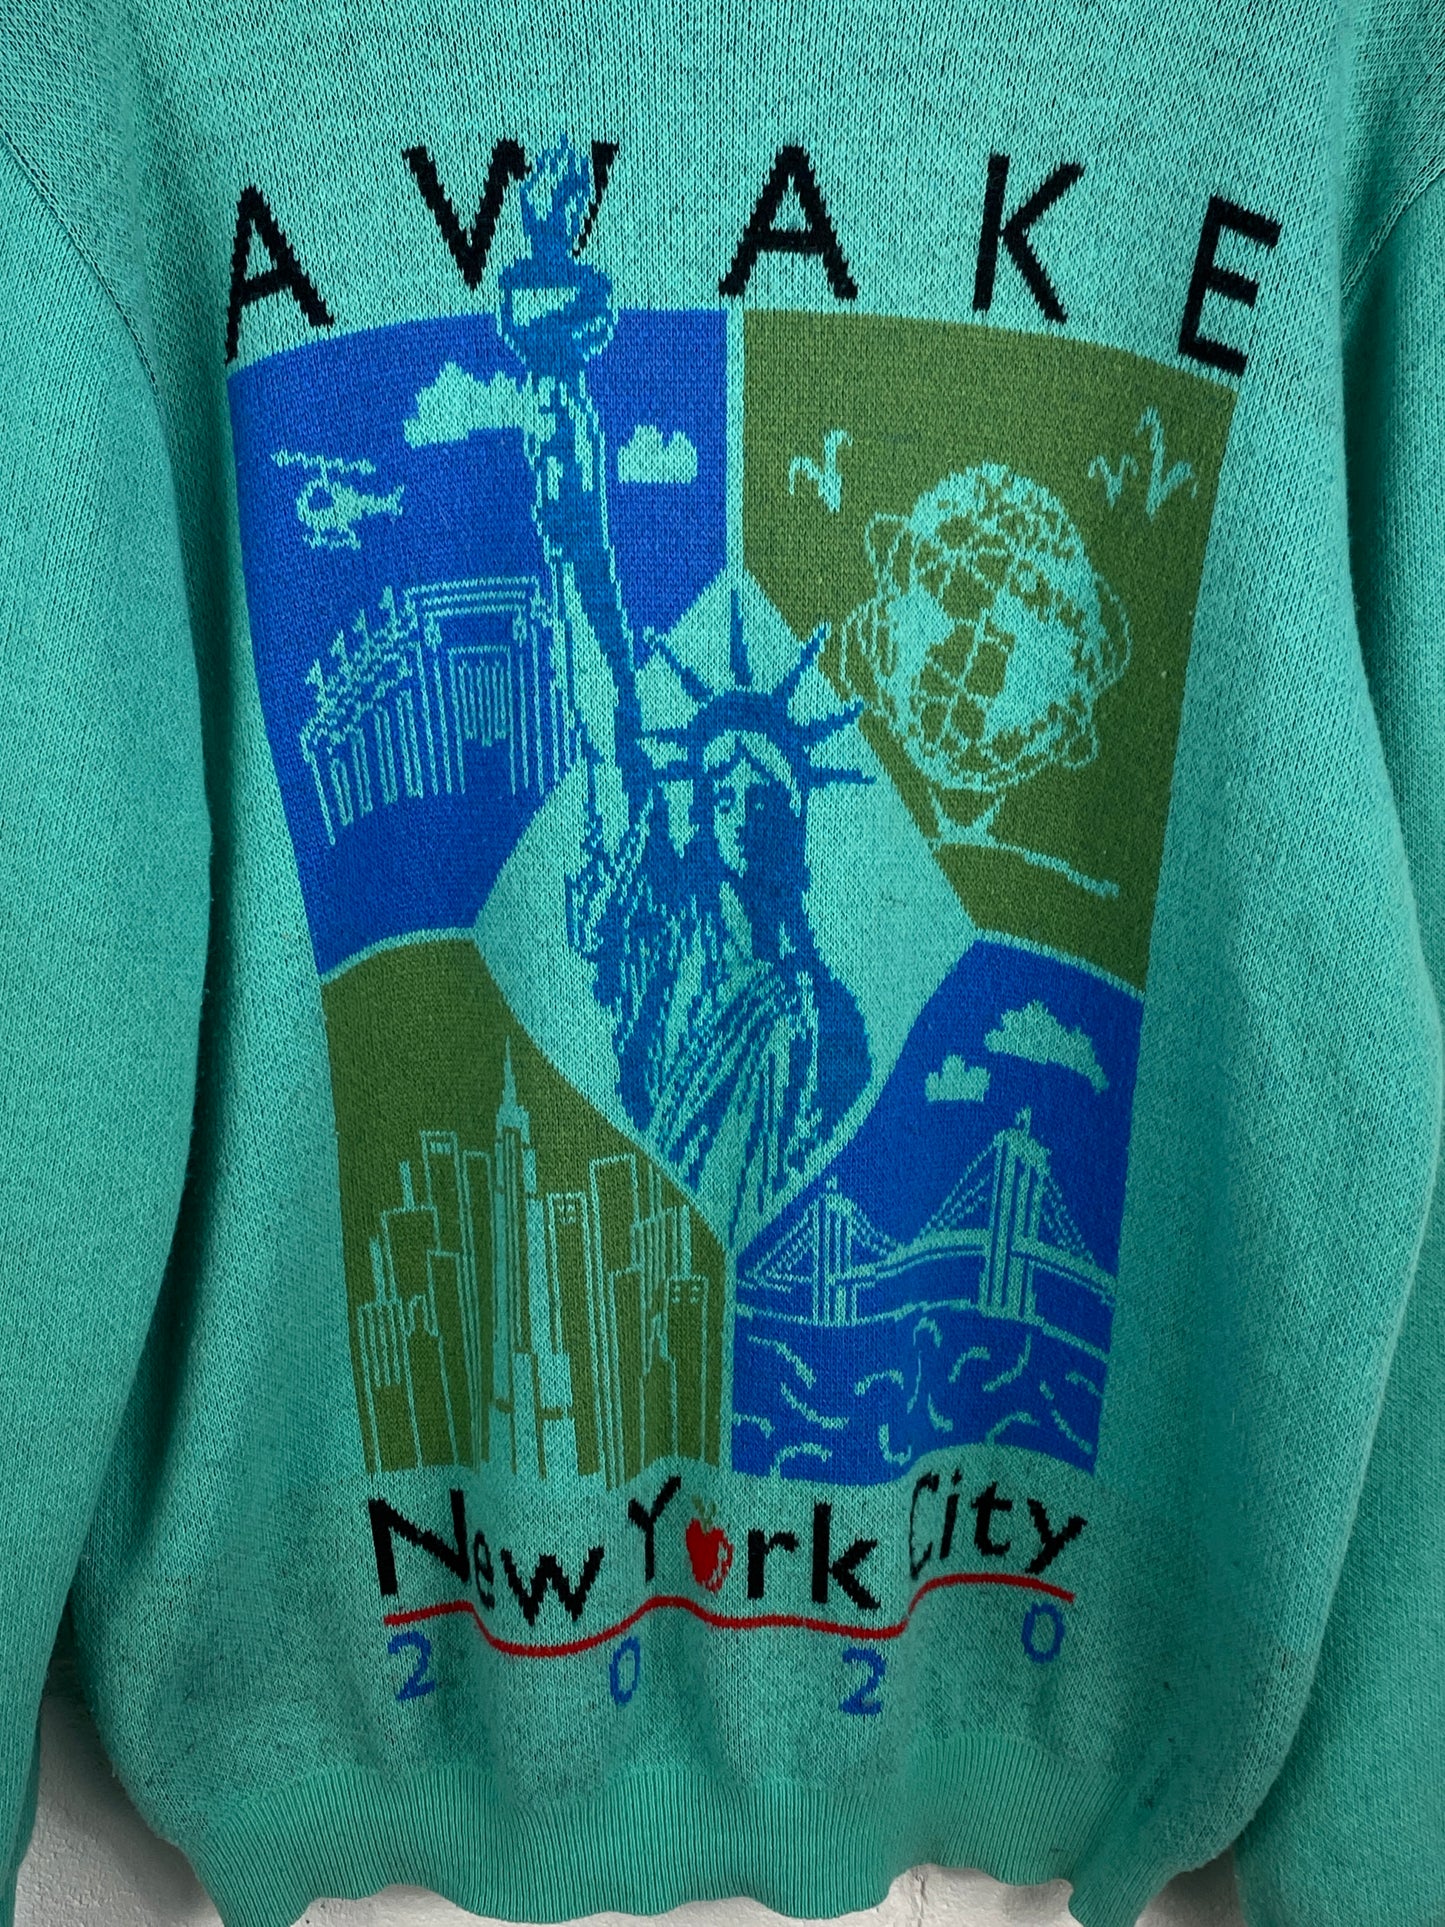 Awake Statue Of Liberty Sweater Sz XL/XXL